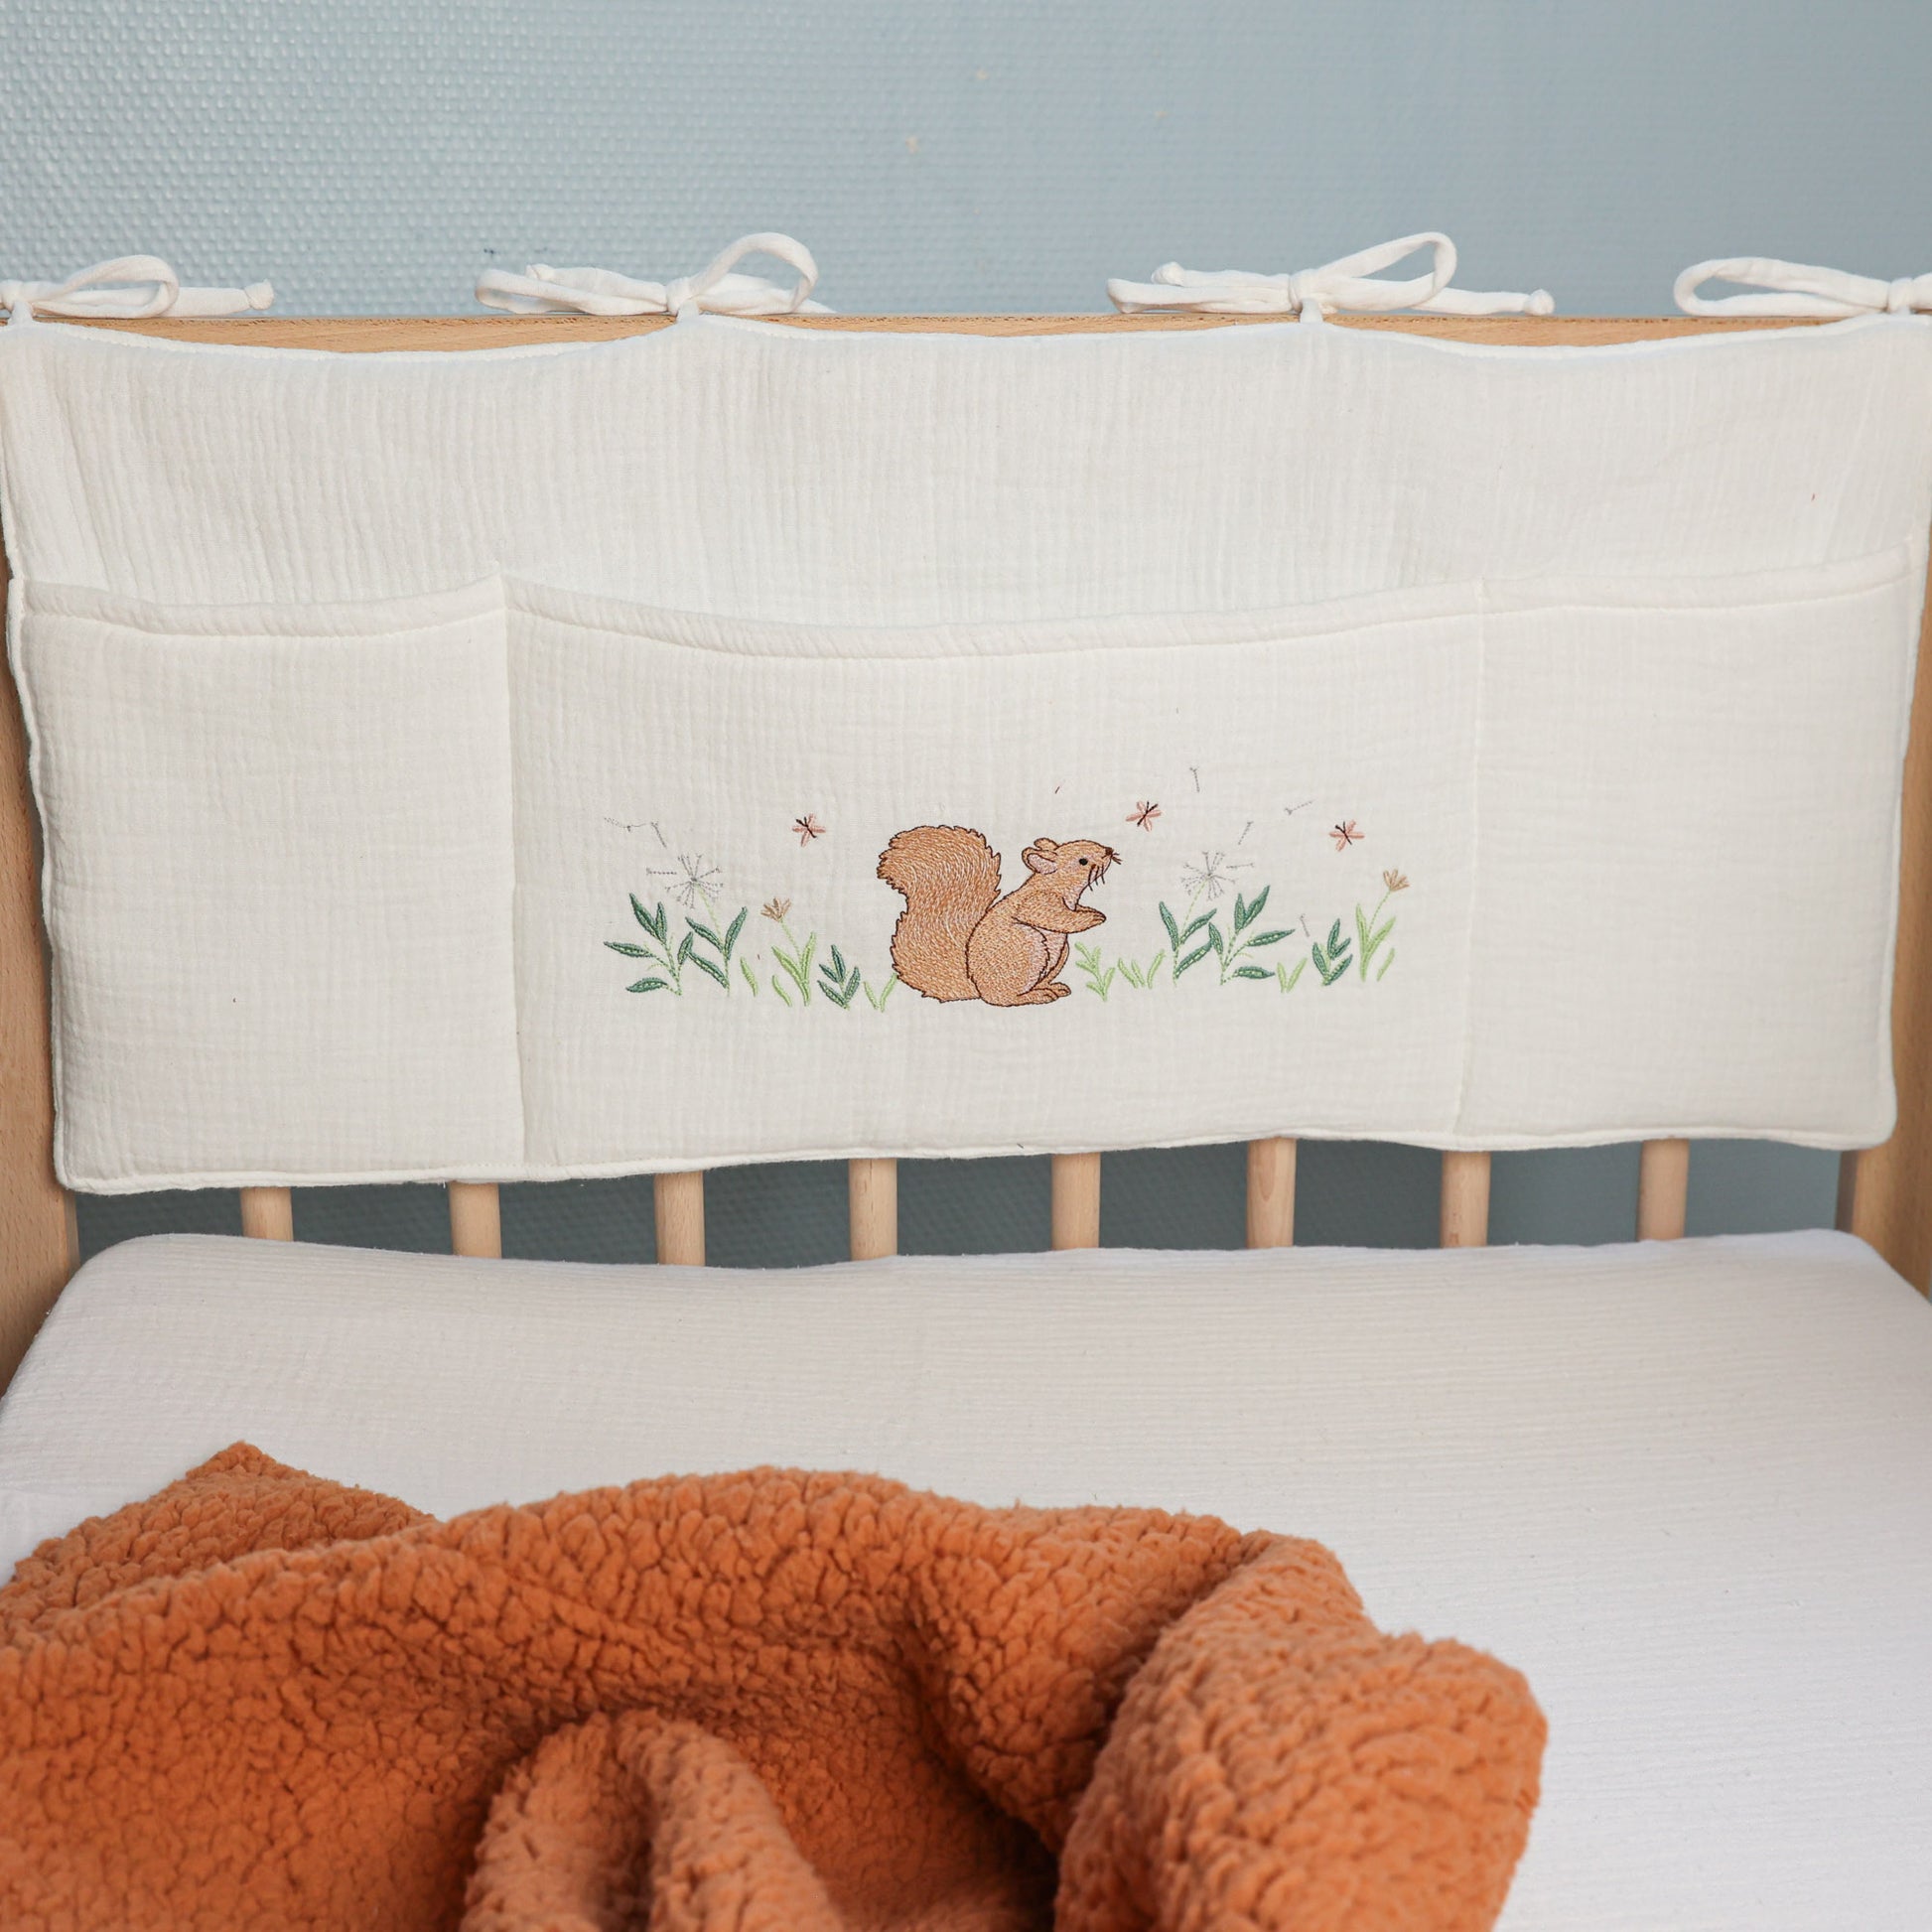 Pochette de lit bébé, range tétine/doudou/organisateur de lit